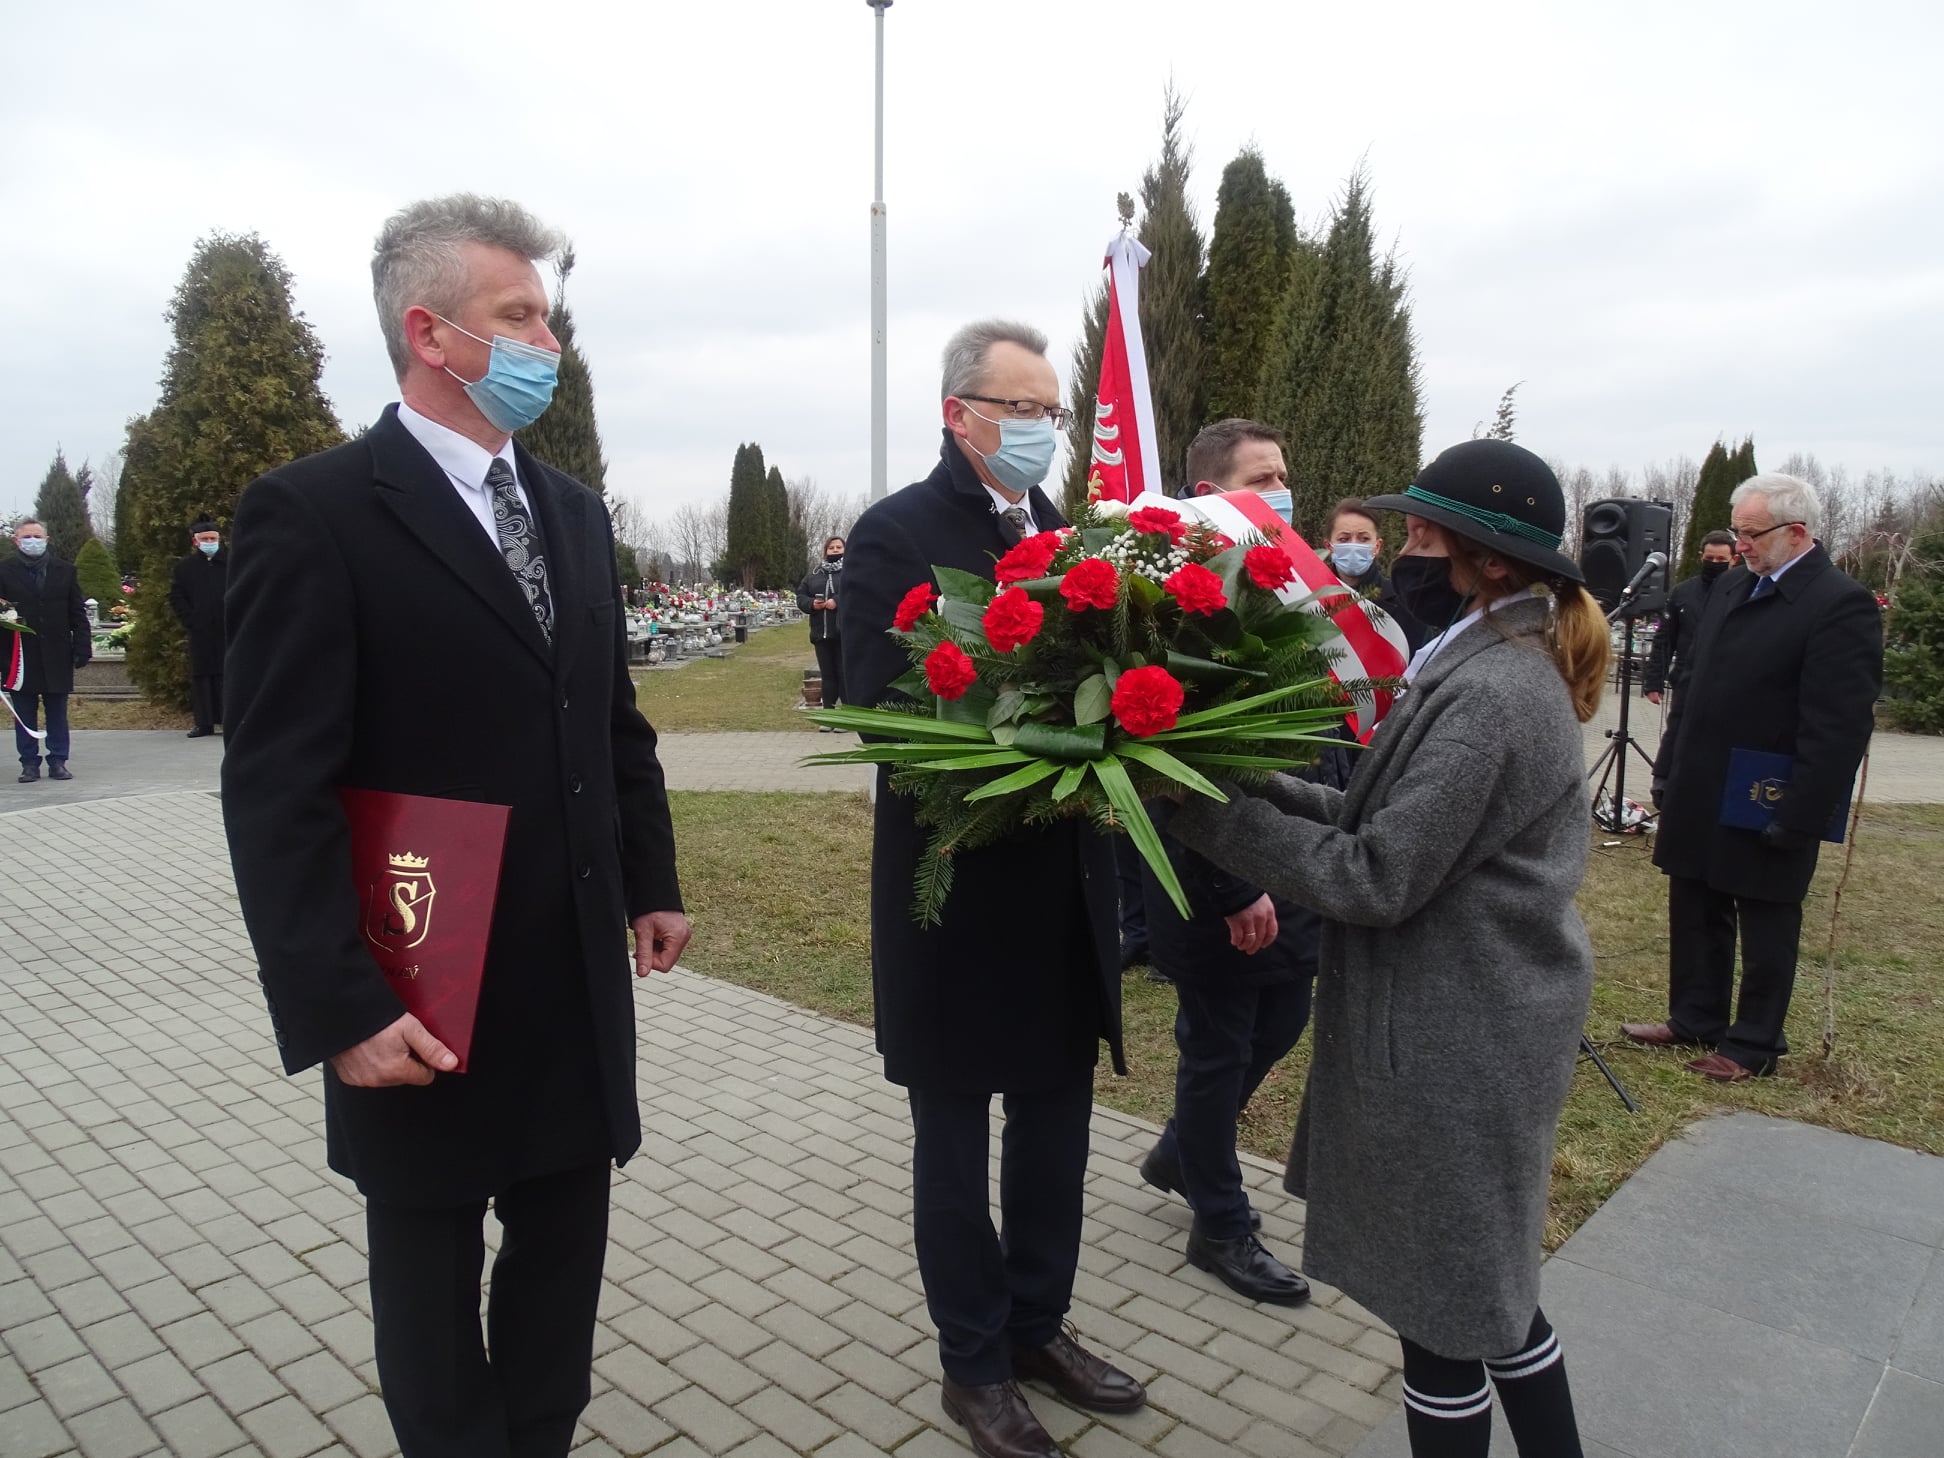 Wśród delegacji składających kwiaty obecna była delegacja Gminy Zwoleń na czele z burmistrzem Zwolenia Arkadiuszem Sulimą.